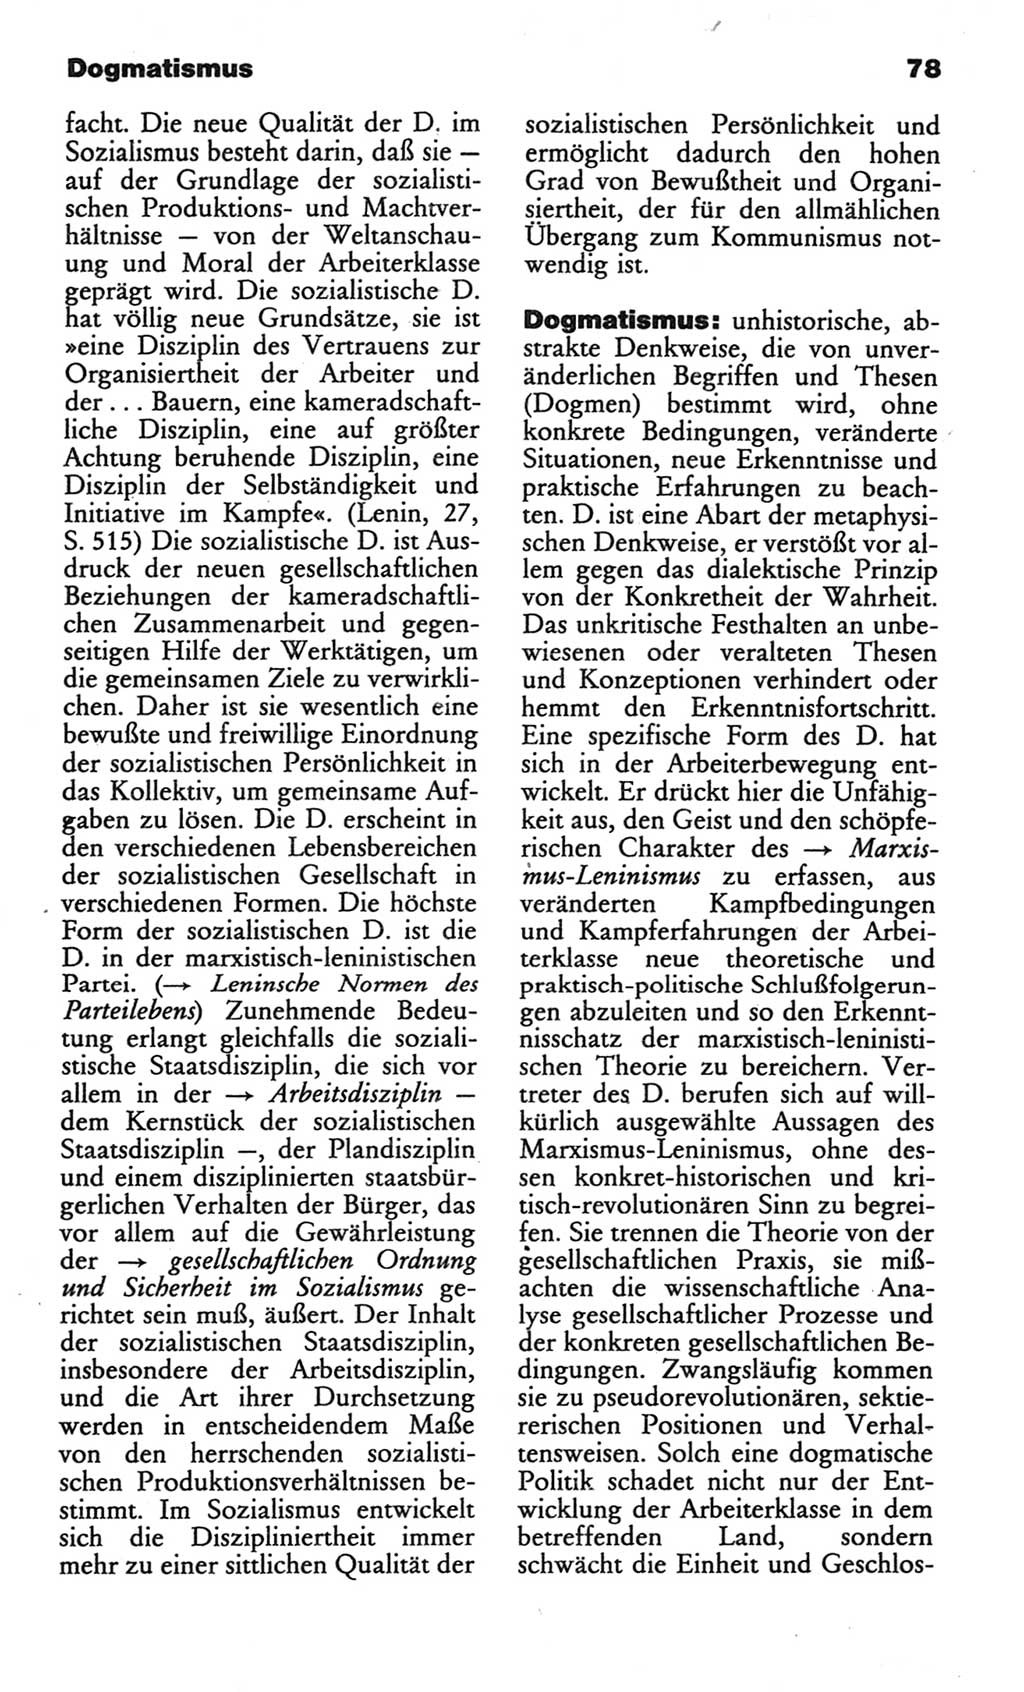 Wörterbuch des wissenschaftlichen Kommunismus [Deutsche Demokratische Republik (DDR)] 1982, Seite 78 (Wb. wiss. Komm. DDR 1982, S. 78)